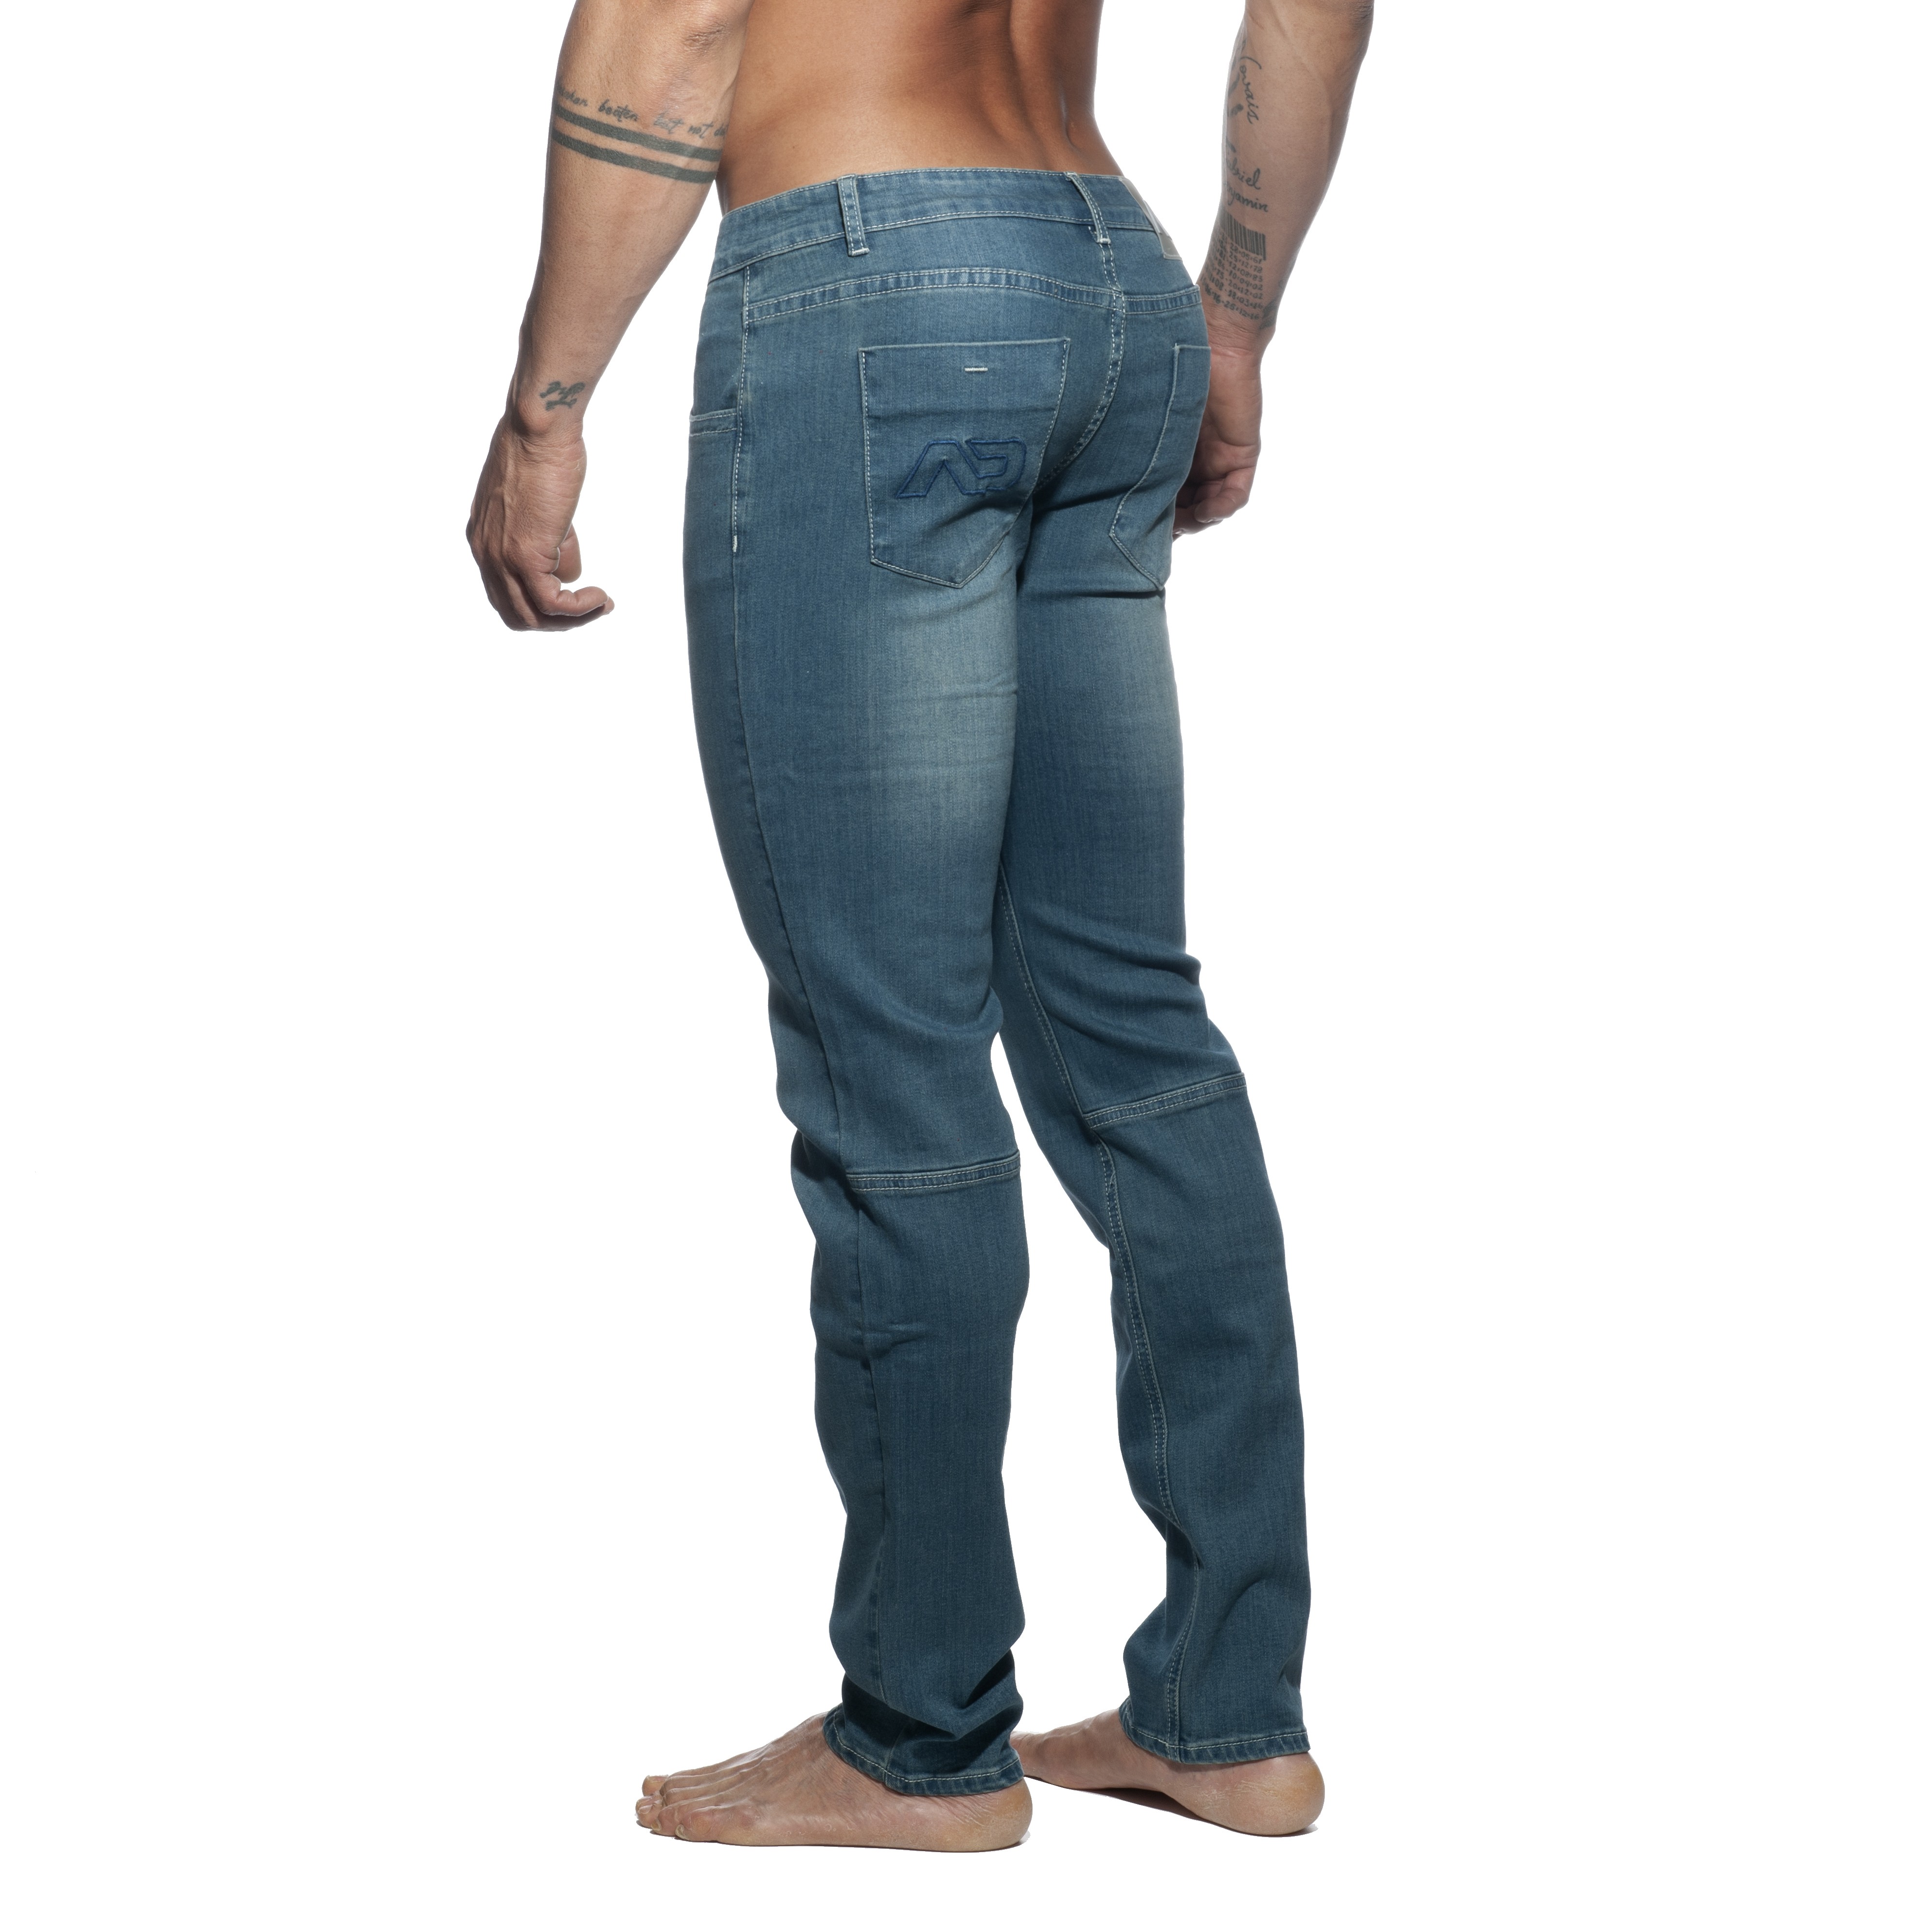 Squat Jeans - ADDICTED : vente de Jean's pour les hommes ADDICTED. ...